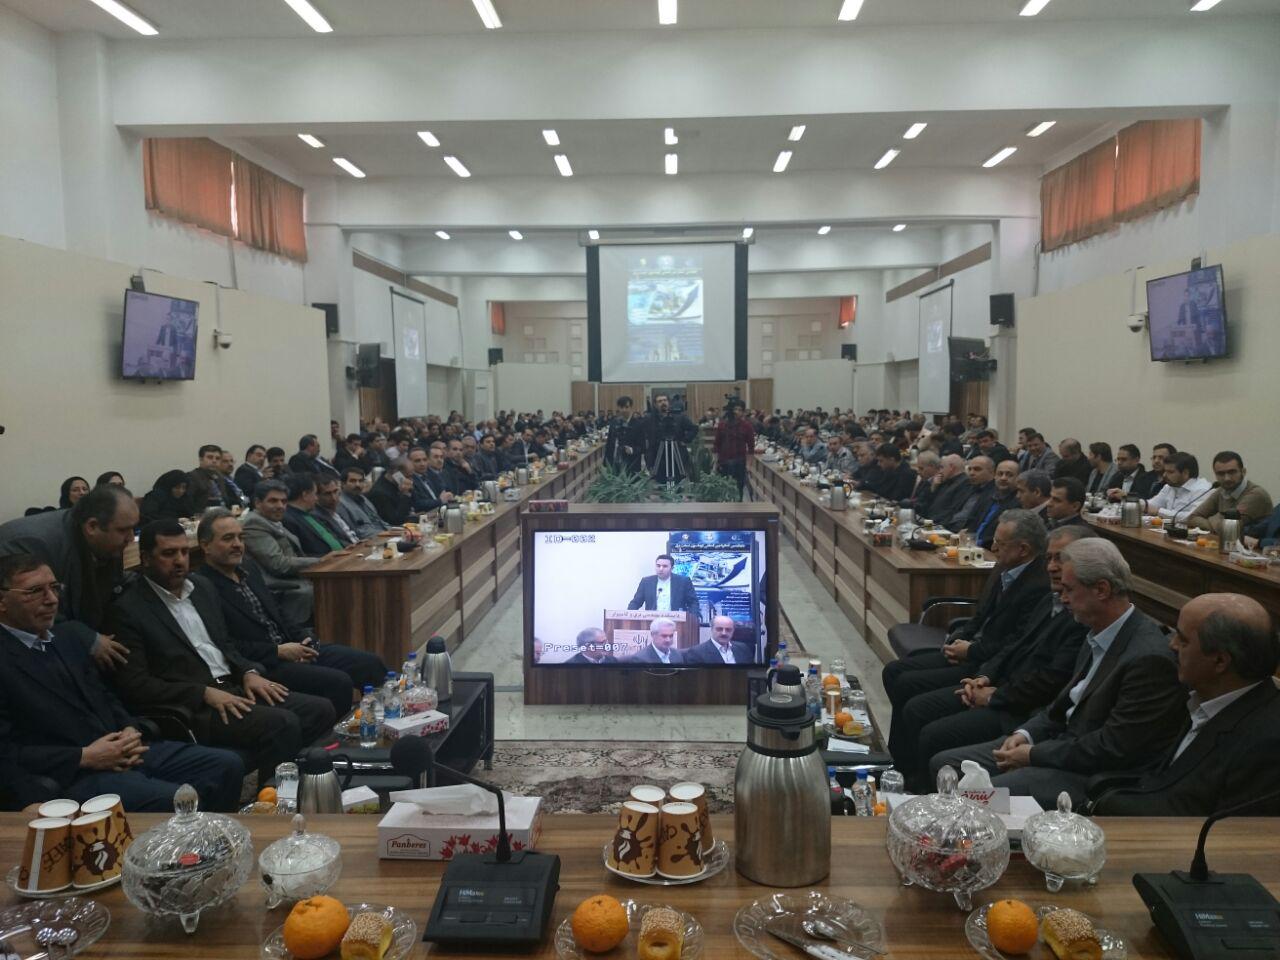 حضور شایسته شرکت توزيع نيروی برق آذربايجان غربي در نمايشگاه جانبی چهارمين کنگره اتوماسيون صنعت برق